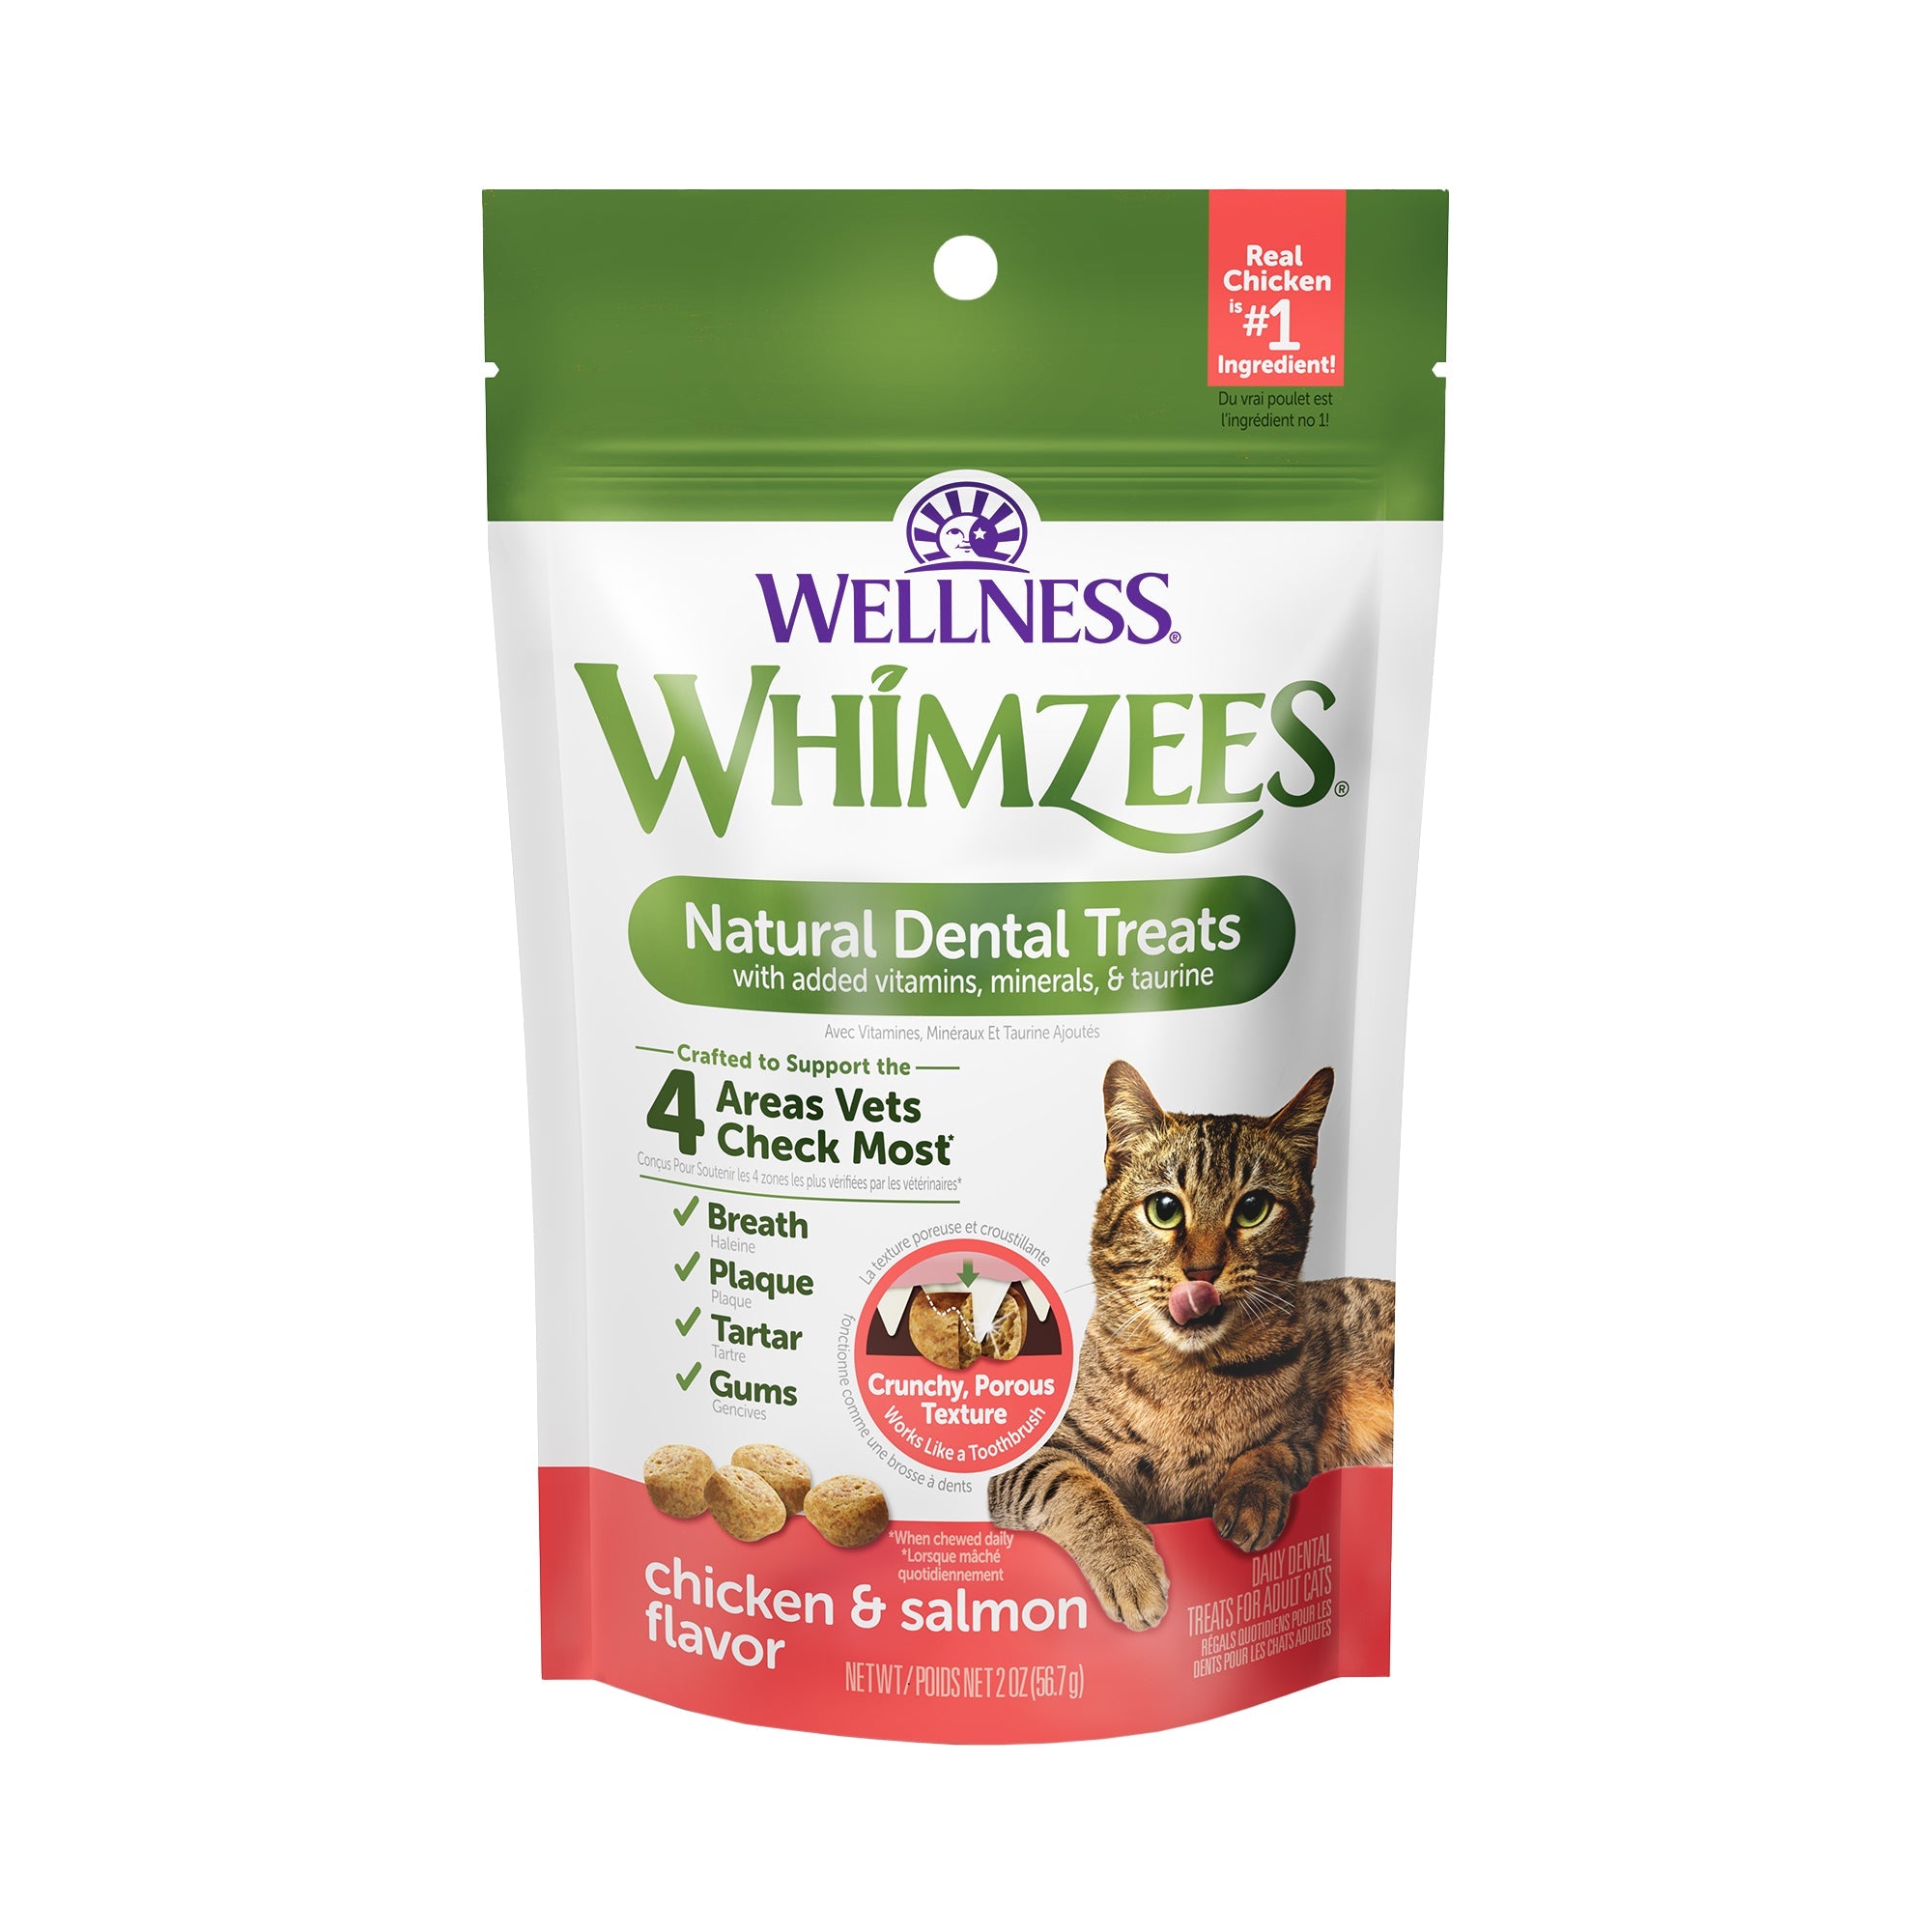 Whimzees Cat Dental Treats | Chicken & Salmon Flavor (2 Sizes) - CreatureLand